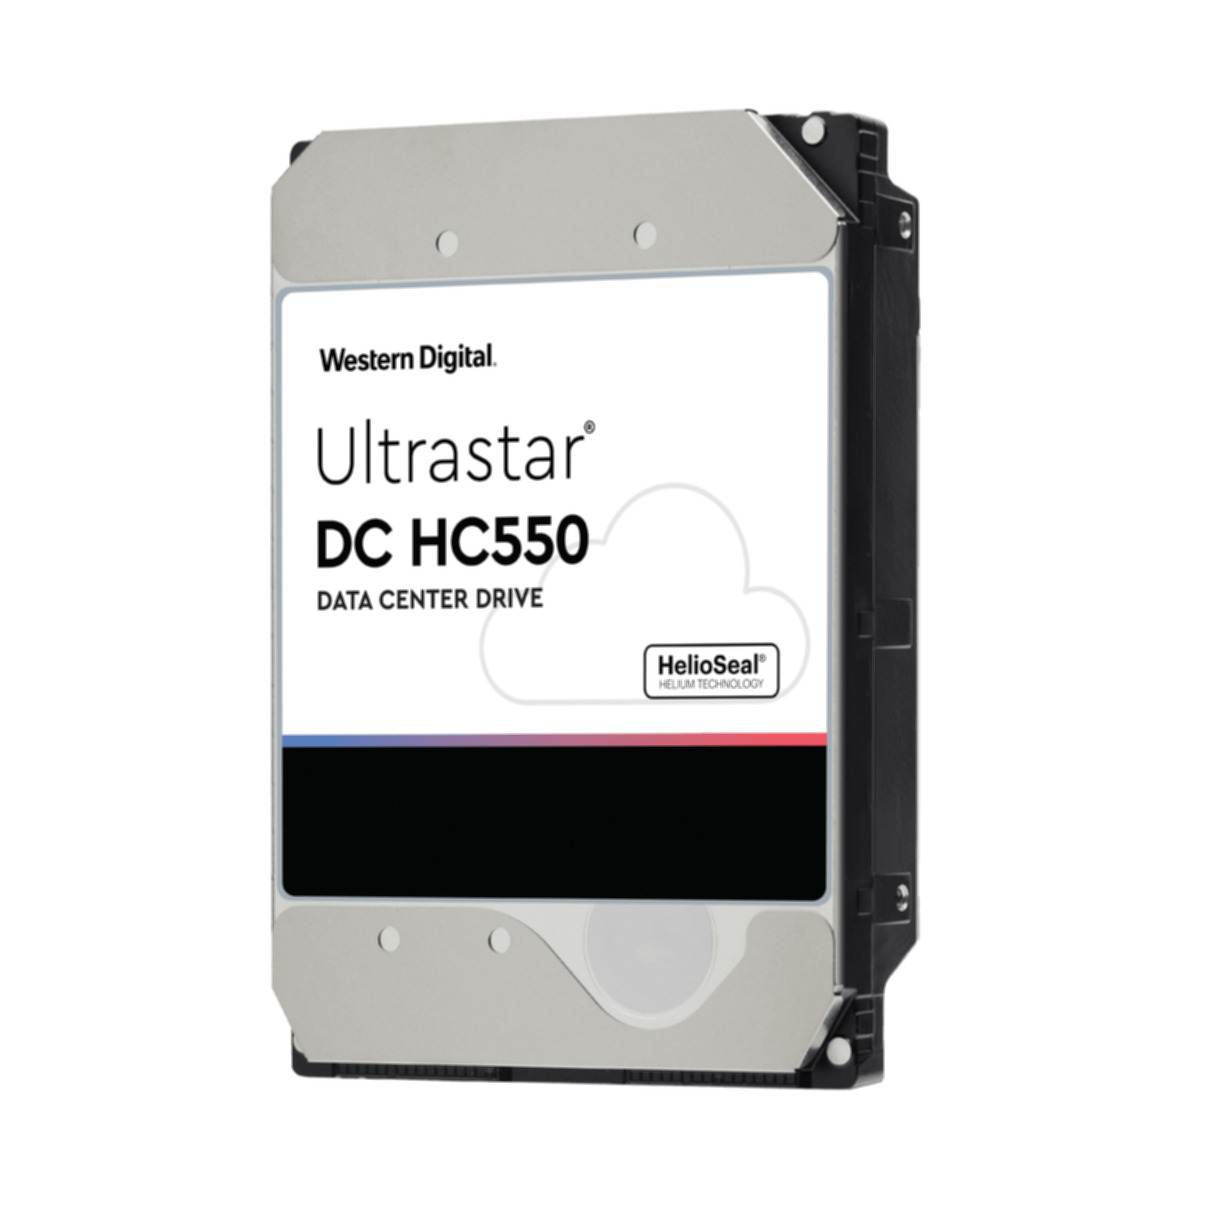 WESTERN DIGITAL DC HC550, HDD, 18000 GB, intern